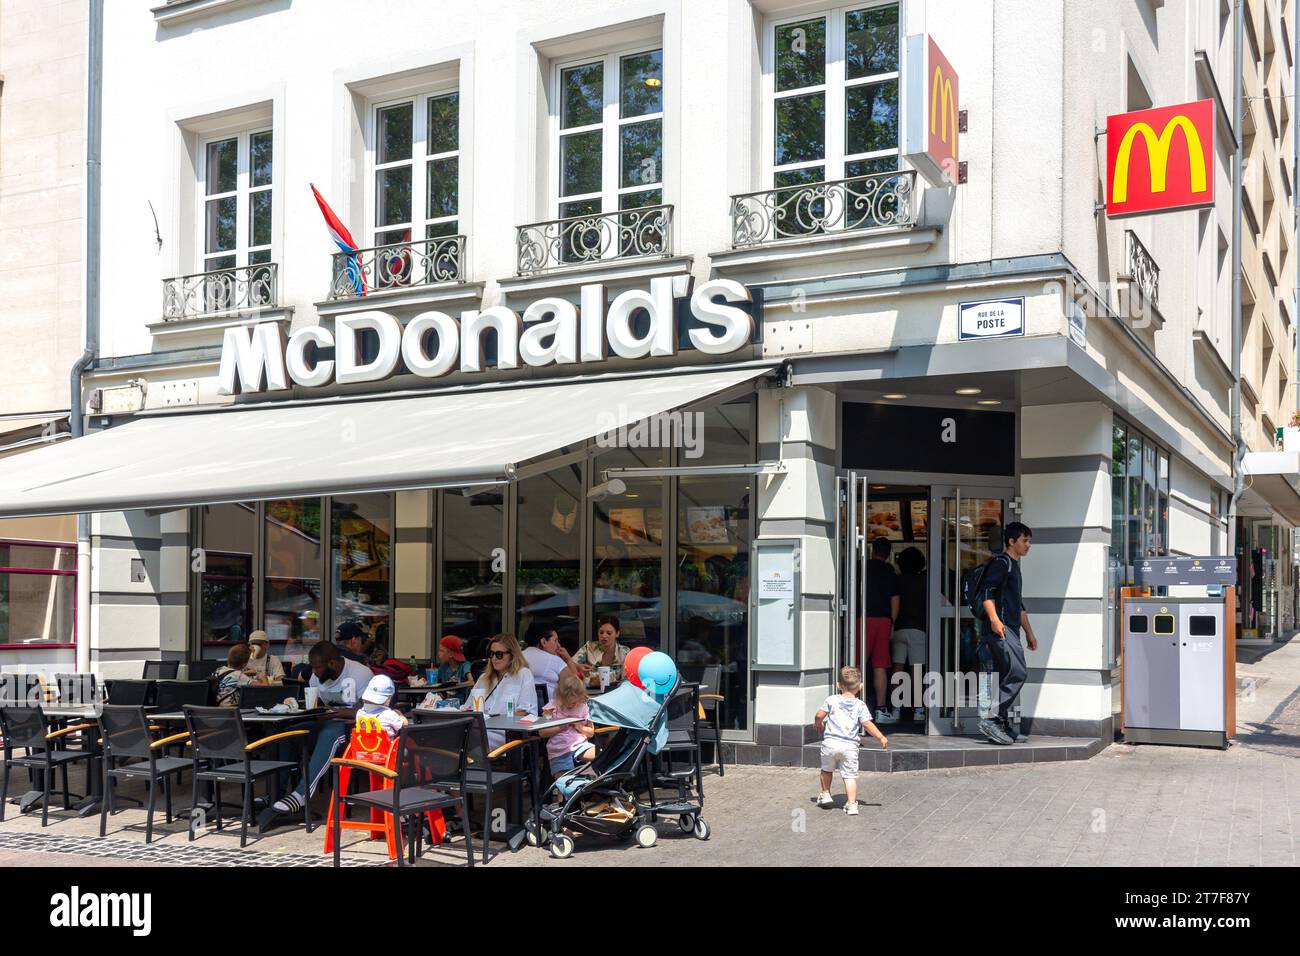 Restaurant McDonald's fast food, rue de la poste, ville haute, ville de Luxembourg, Luxembourg Banque D'Images